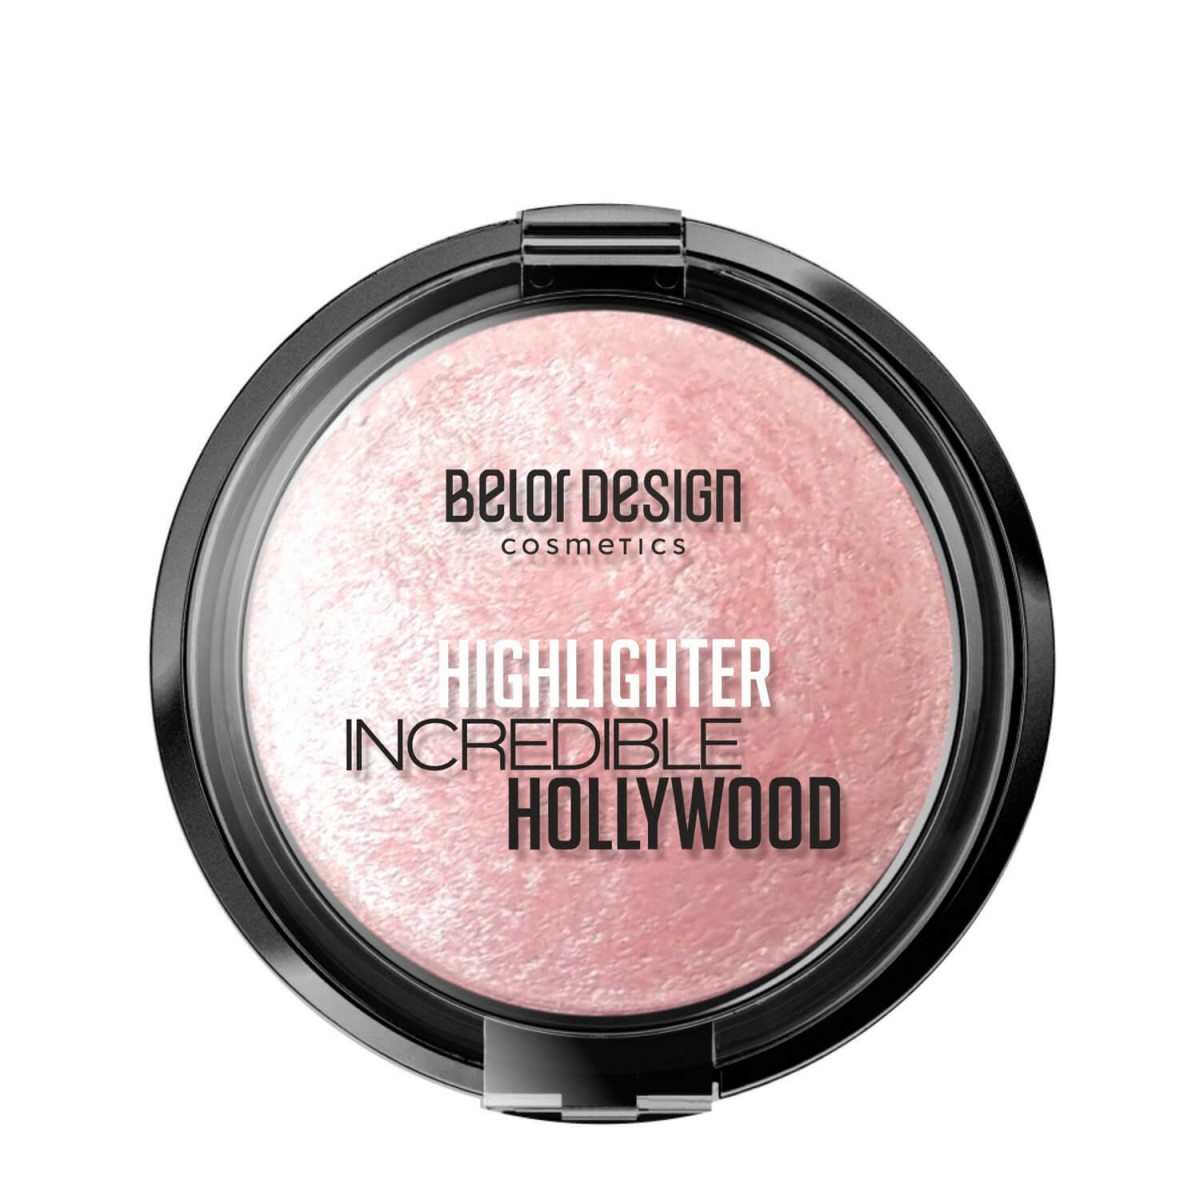 Highlighter Incredible Hollywood 03 [Belor Design]